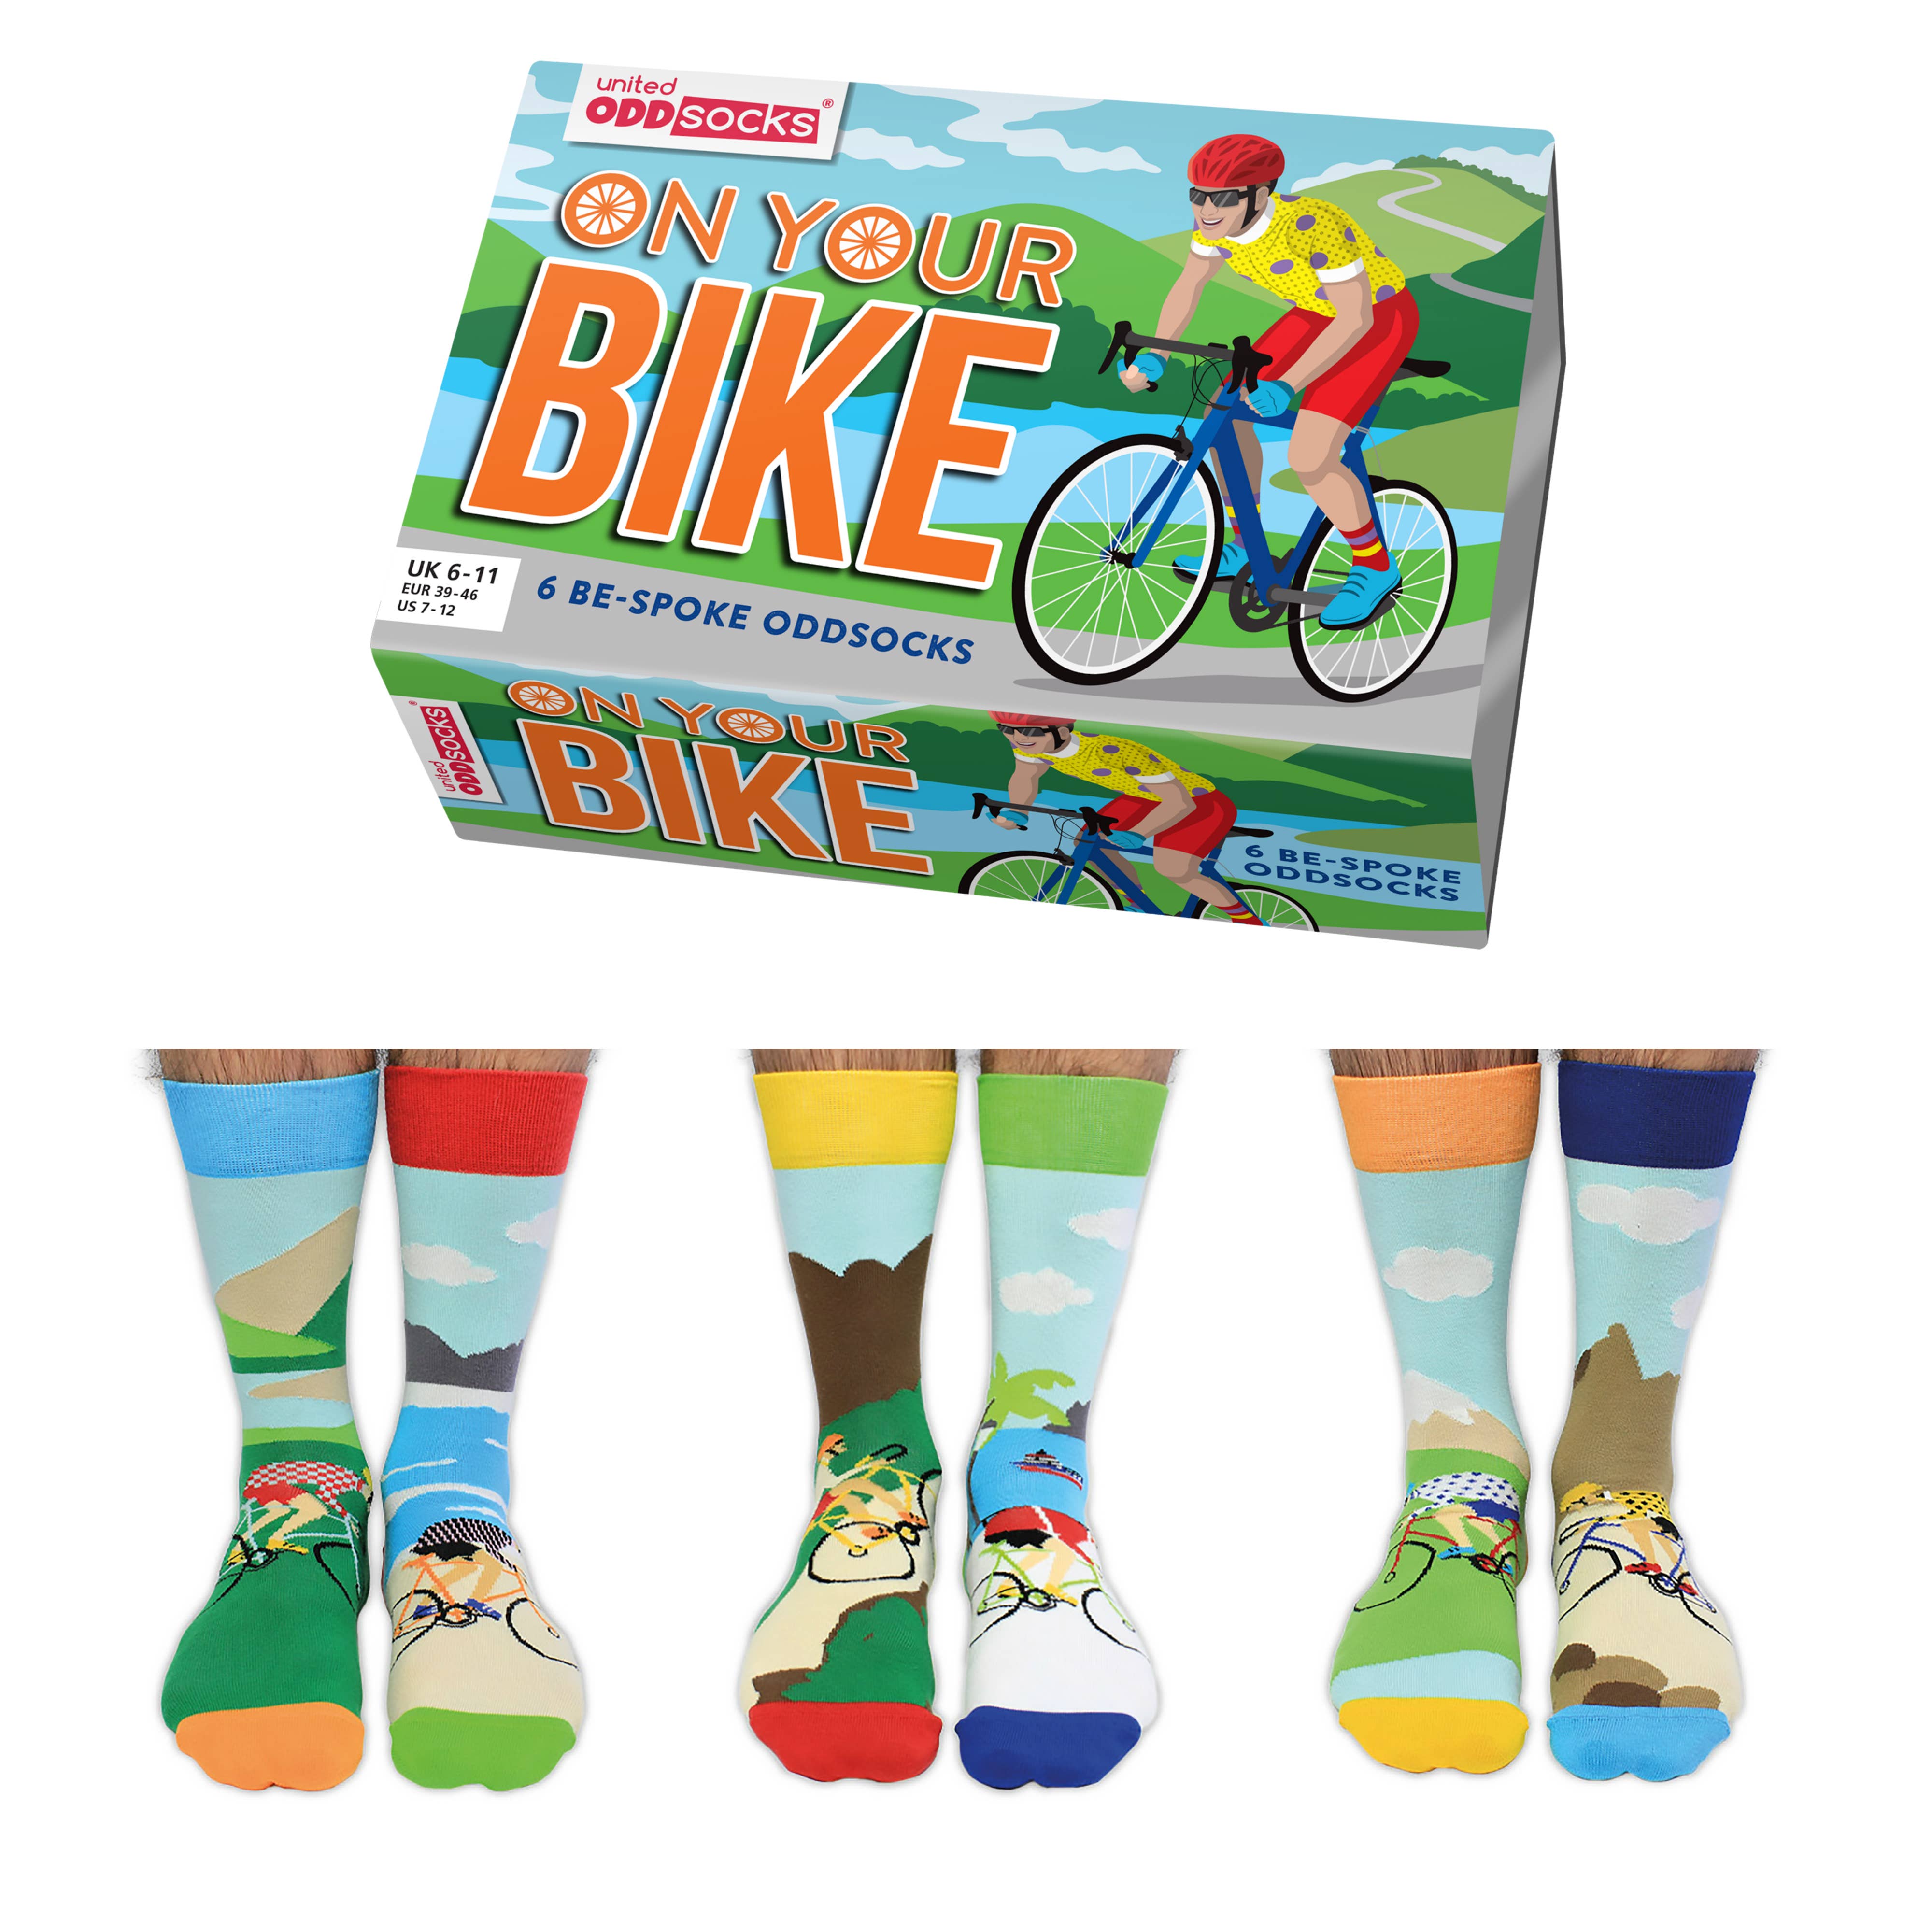 United Oddsocks 6 Odd Socks Gift Box - UK 6-11 EUR 39-46 US 7-12 - On Your Bike 